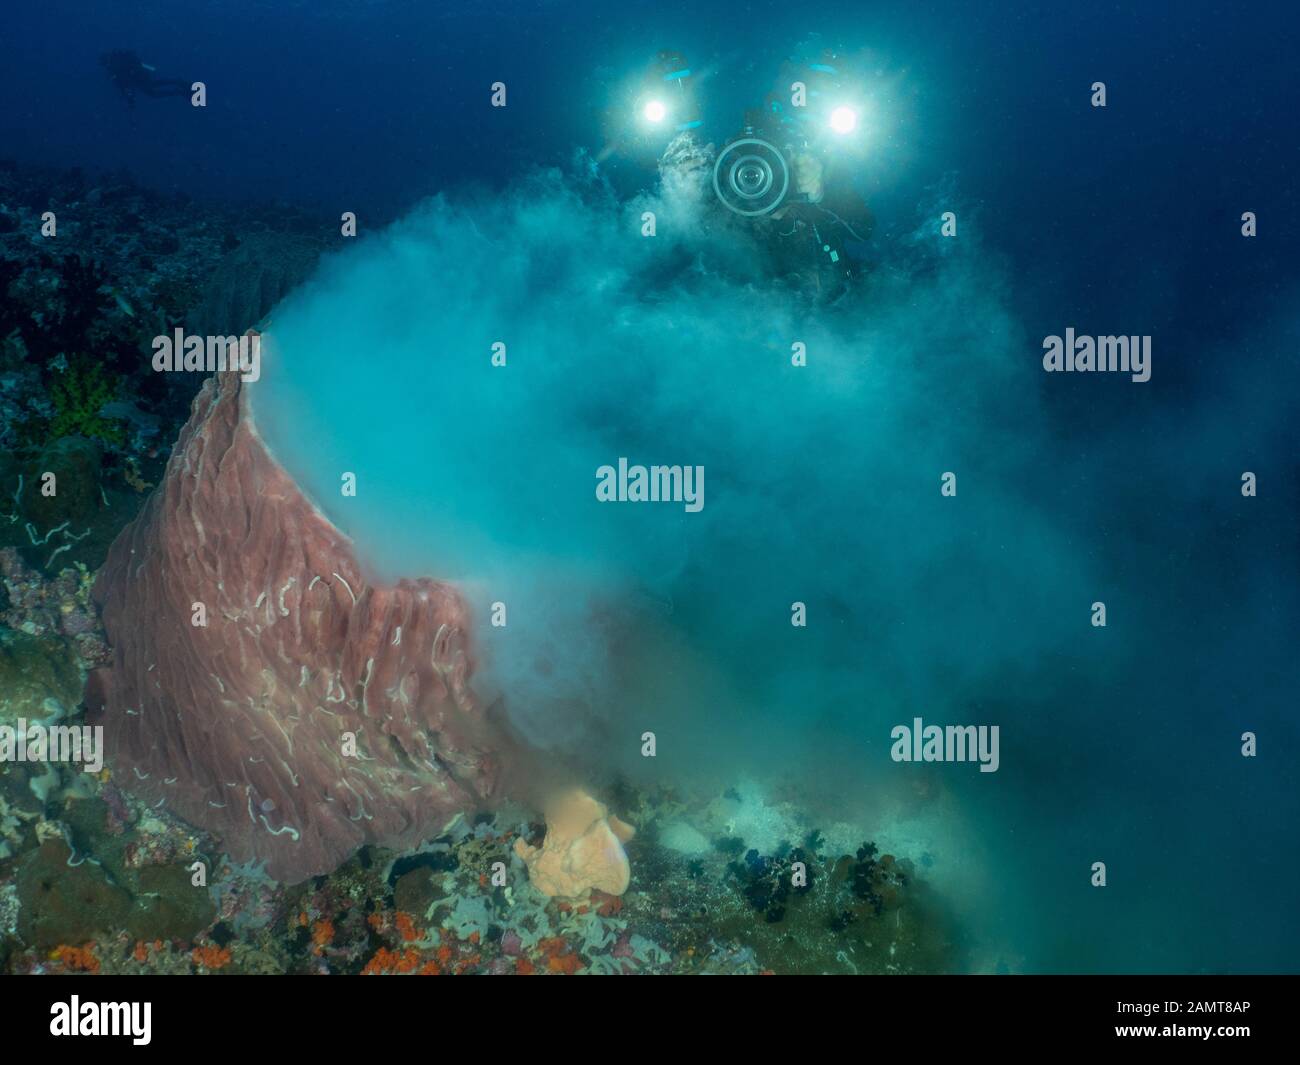 Buzo fotografiando y filmando Desove de corales, Mar de banda, Indonesia Foto de stock